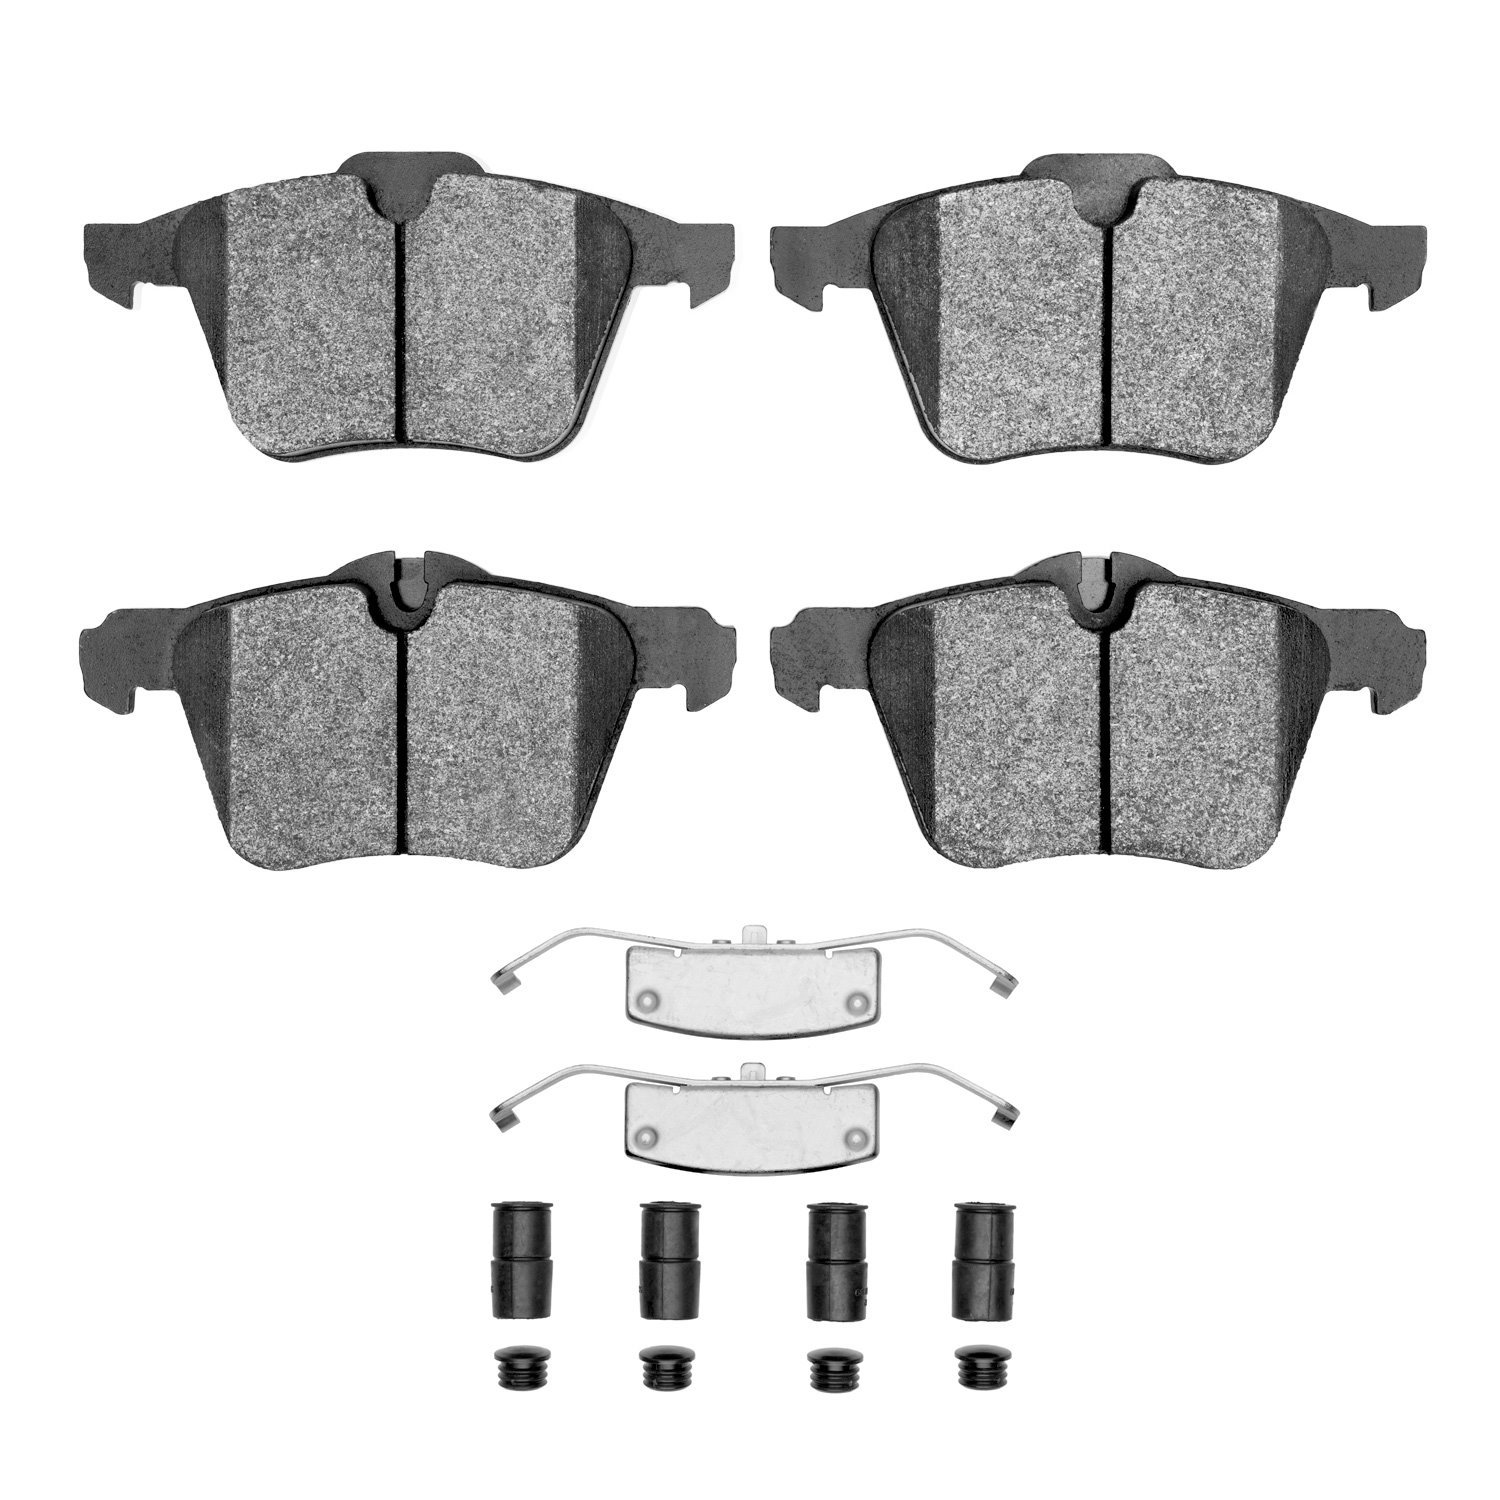 1552-1240-01 5000 Advanced Low-Metallic Brake Pads & Hardware Kit, 2009-2015 Jaguar, Position: Front